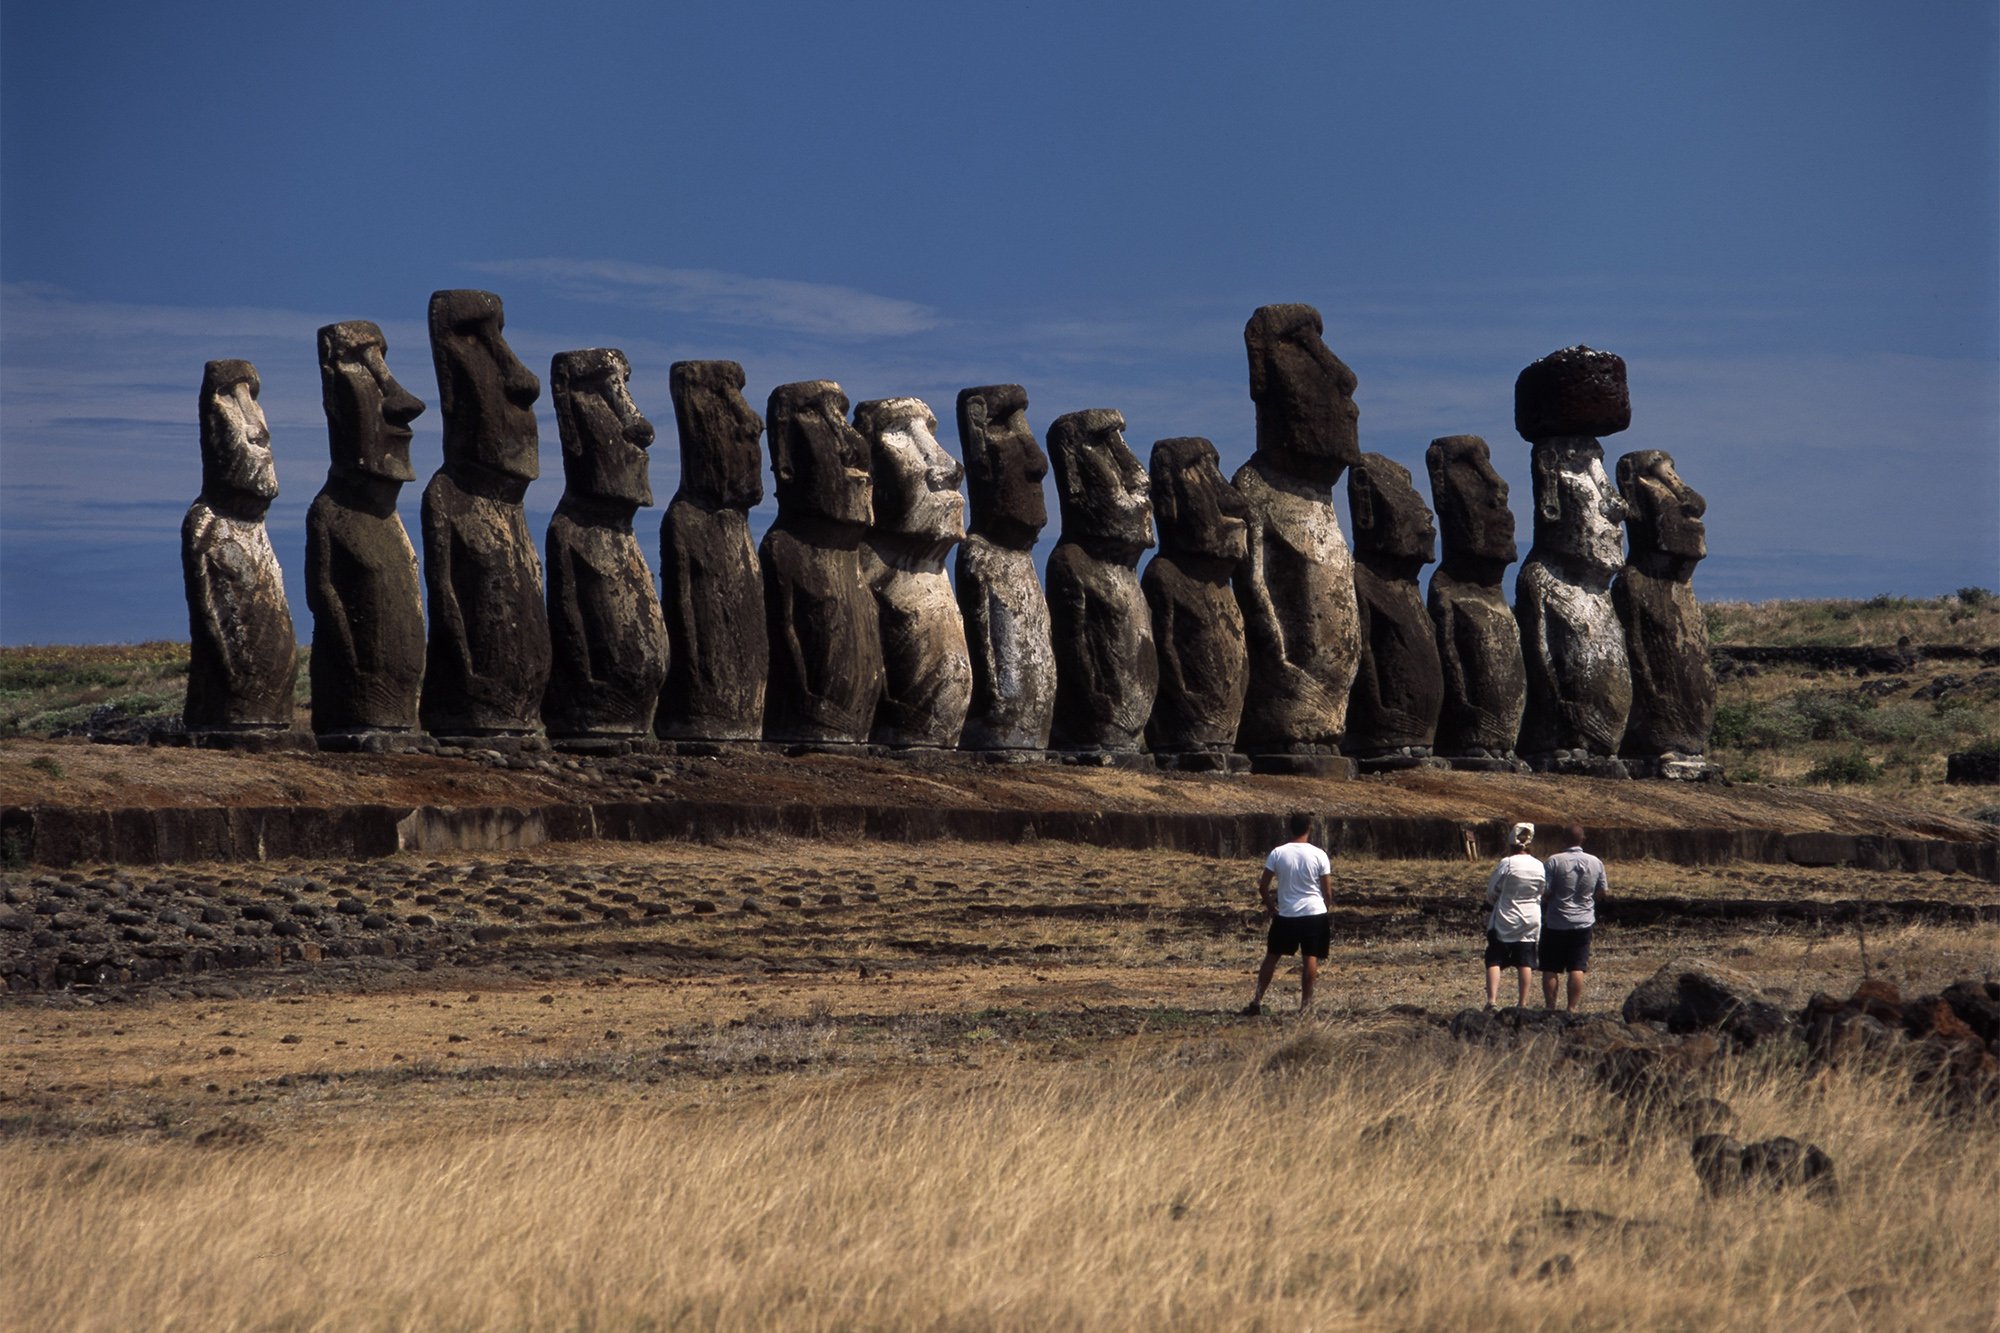 Остров Пасхи статуи Моаи. Каменные идолы острова Пасхи. Моаи в Чили. Садовая скульптура истукан с острова Пасхи.